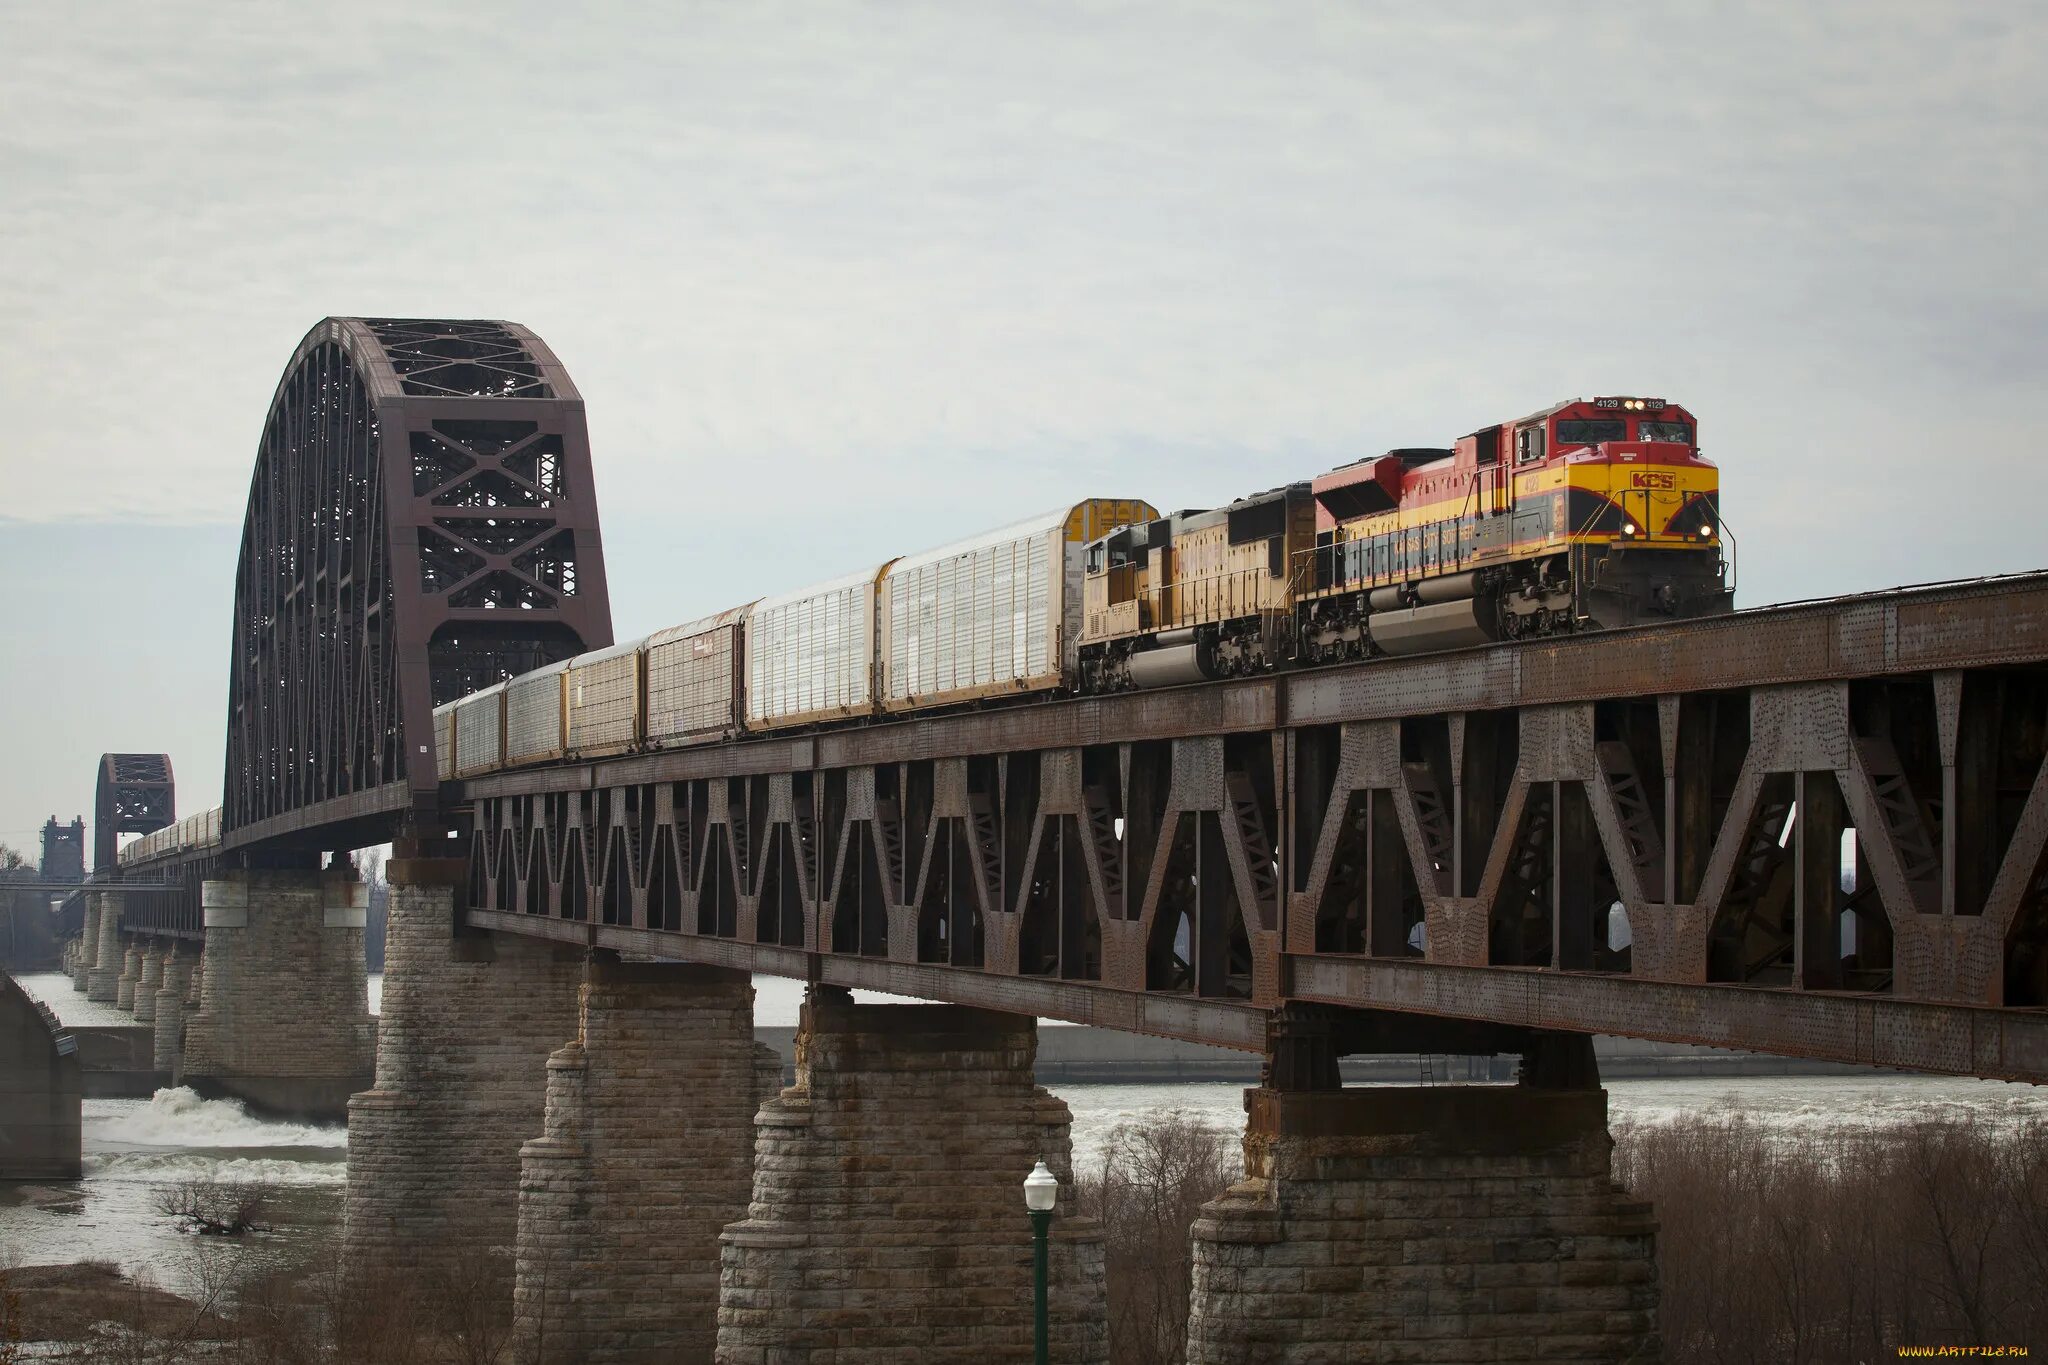 +Иллинойс ЖД мост. Поезд на мосту. Поезд на ЖД мосту. Железнодорожный мост с поездом.